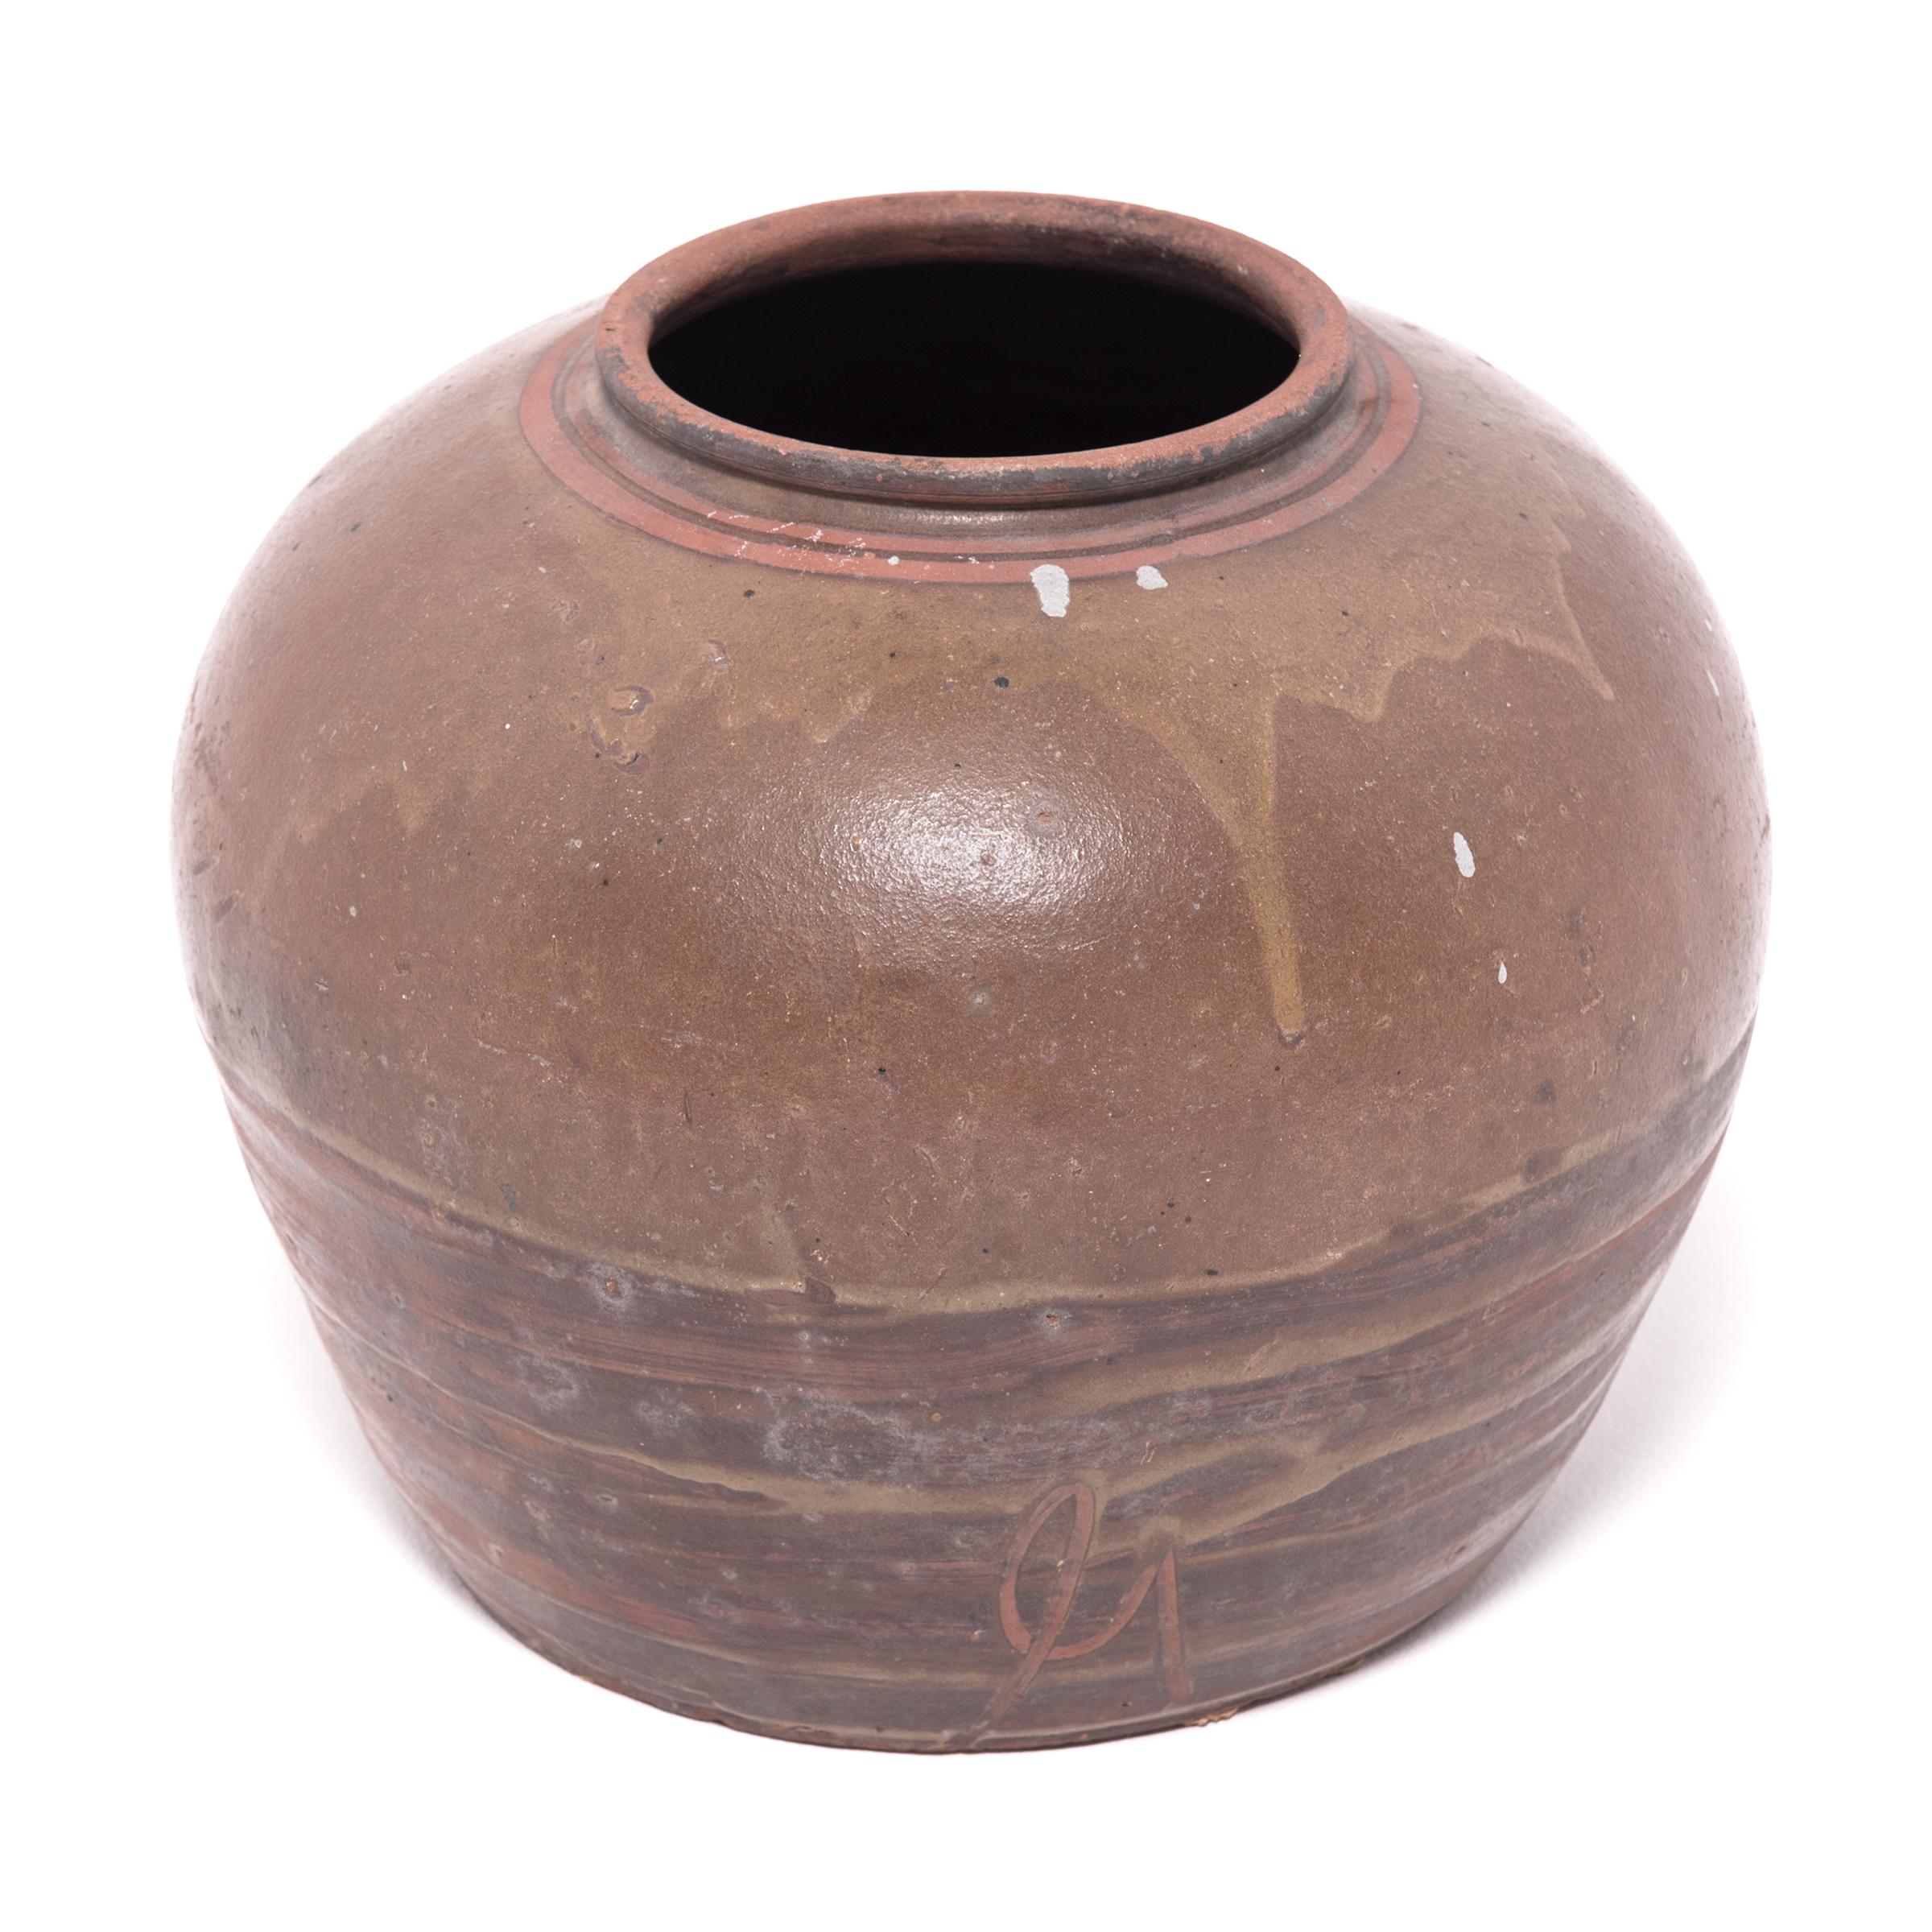 Dieses Gefäß aus dem frühen 20. Jahrhundert, dessen Wurzeln bis in die Han-Dynastie zurückreichen, ahmt die vollmundigen Formen und die ungewöhnliche Glasur antiker Keramiken nach. An den breiten Schultern des Gefäßes haftet eine grünlich-braune